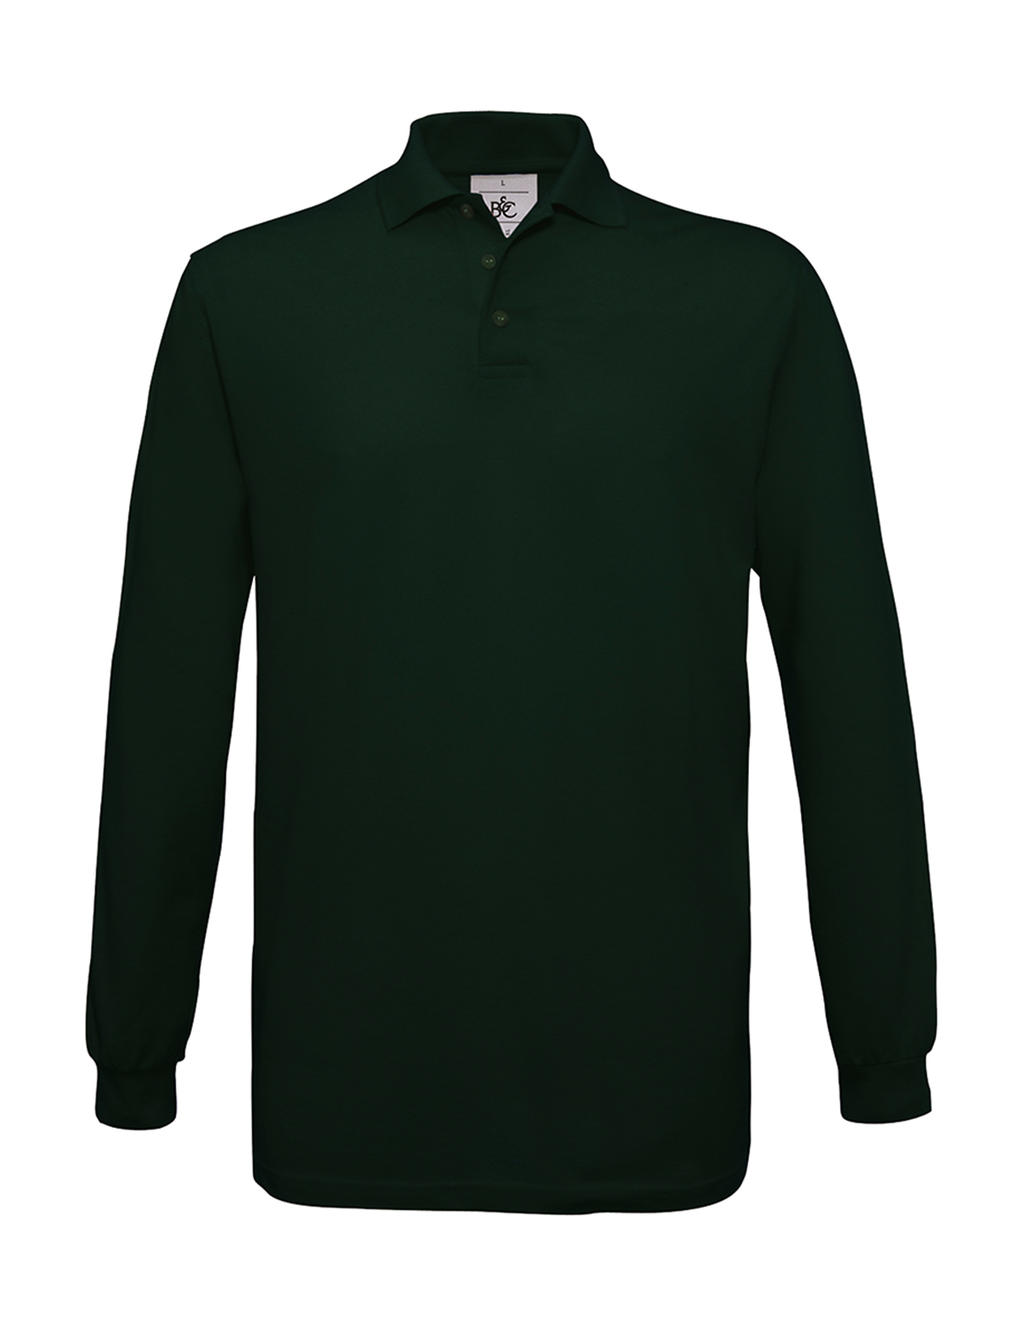 Pánské polo tričko B&C Safran s dlouhým rukávem - tmavě zelené, S